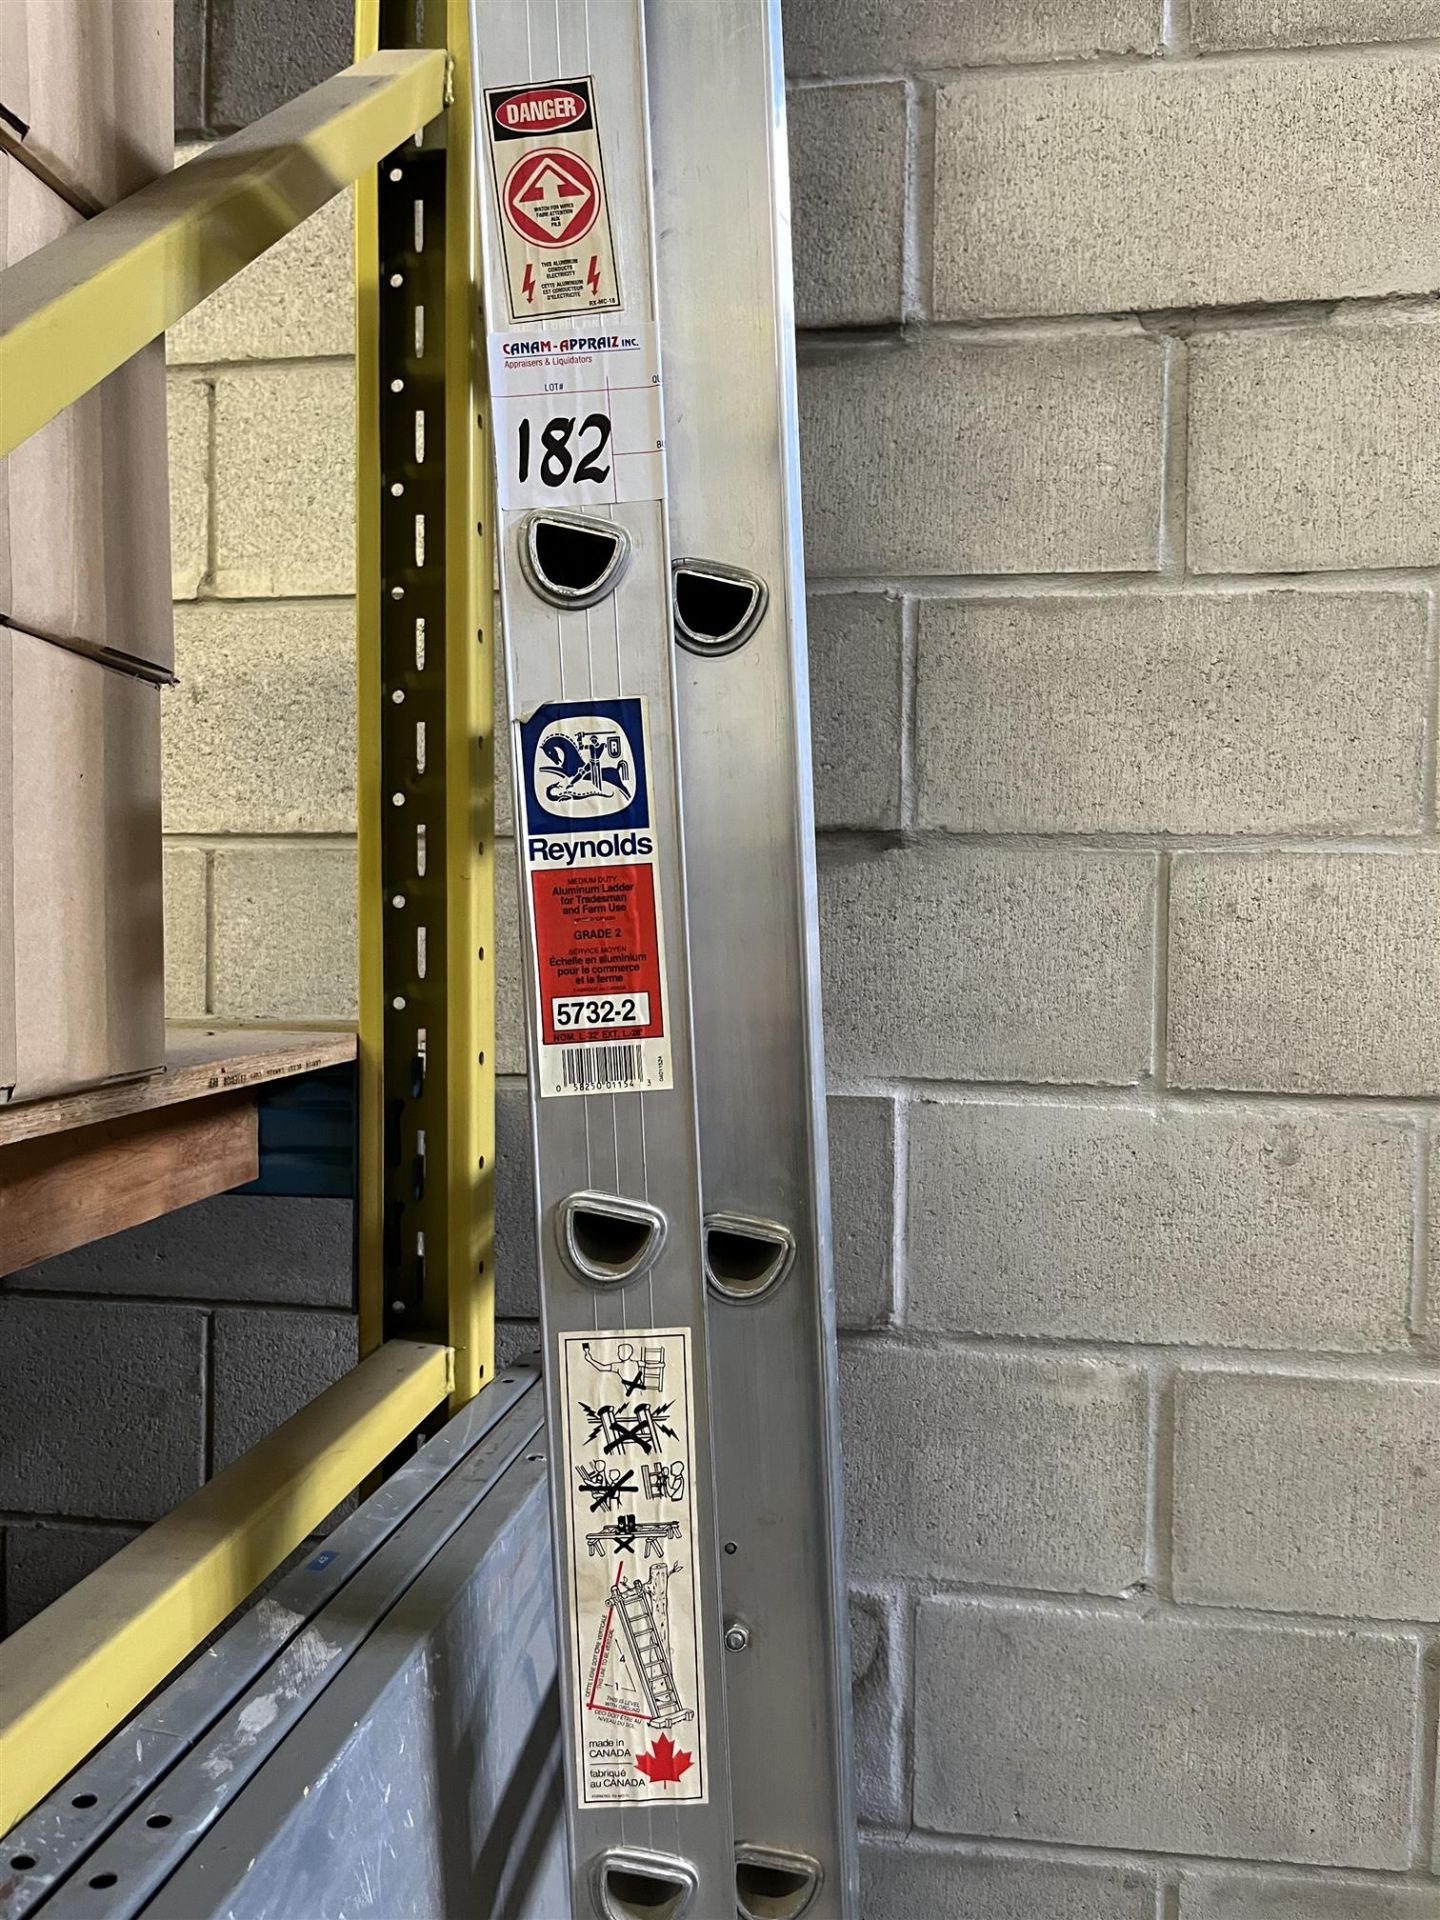 Reynolds Medium Duty Aluminum Extention Ladder - 5732-2 - 32' - 60'